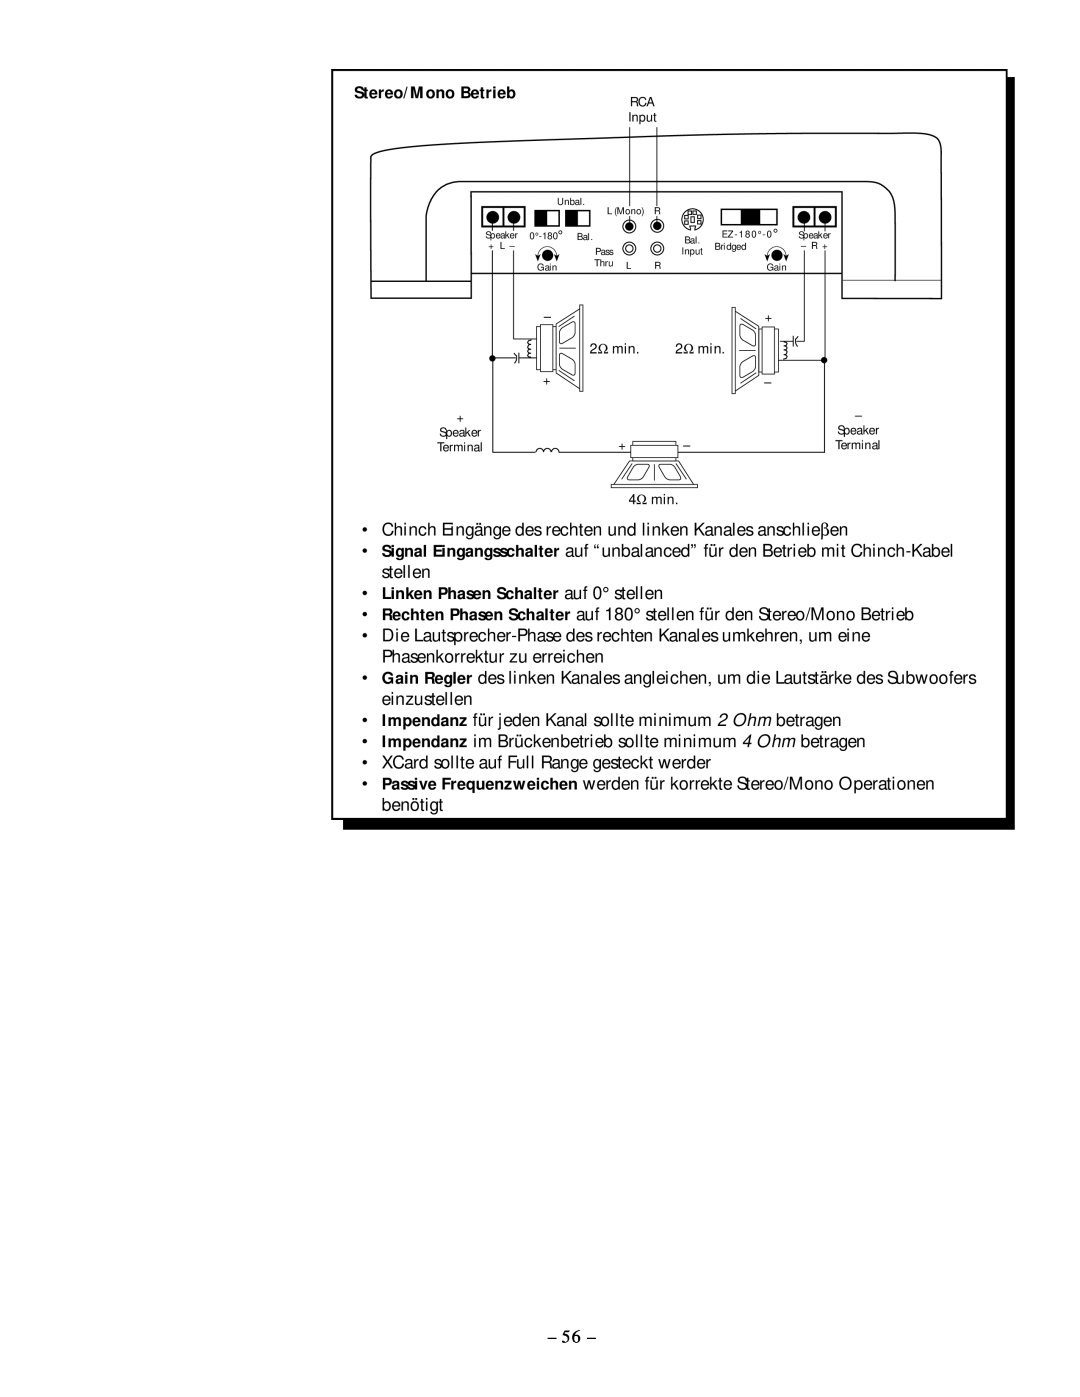 Rockford Fosgate 250.1 manual Stereo/Mono Betrieb, Linken Phasen Schalter auf 0 stellen 